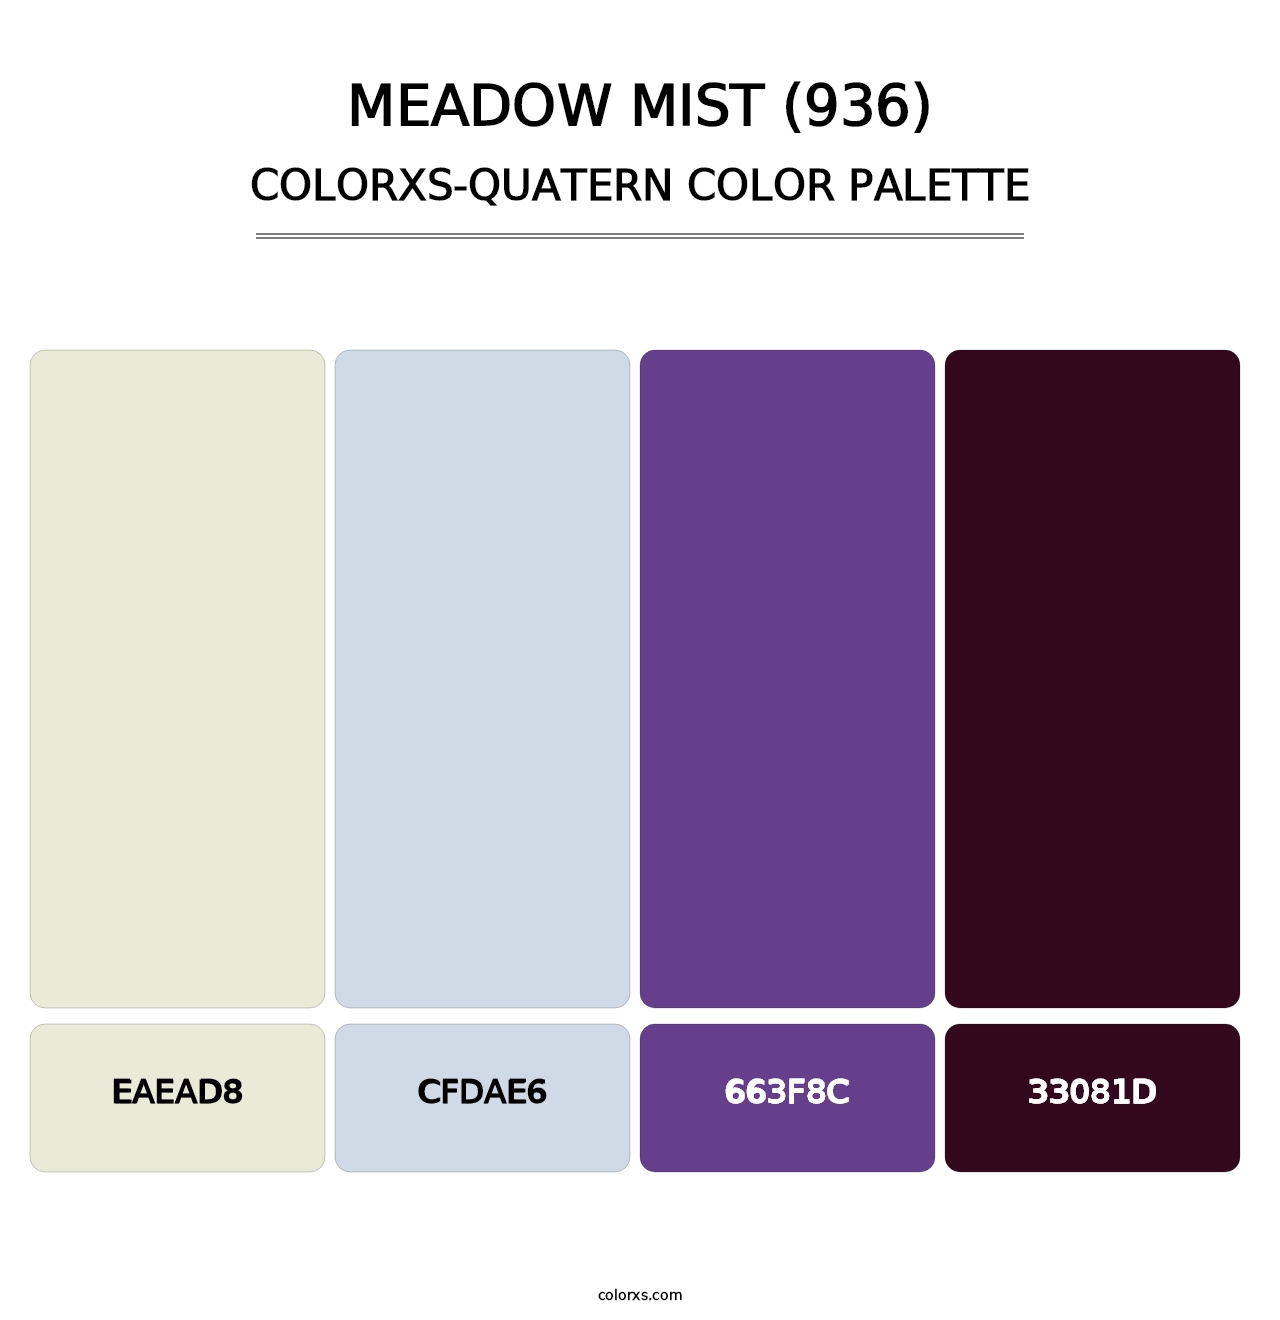 Meadow Mist (936) - Colorxs Quatern Palette